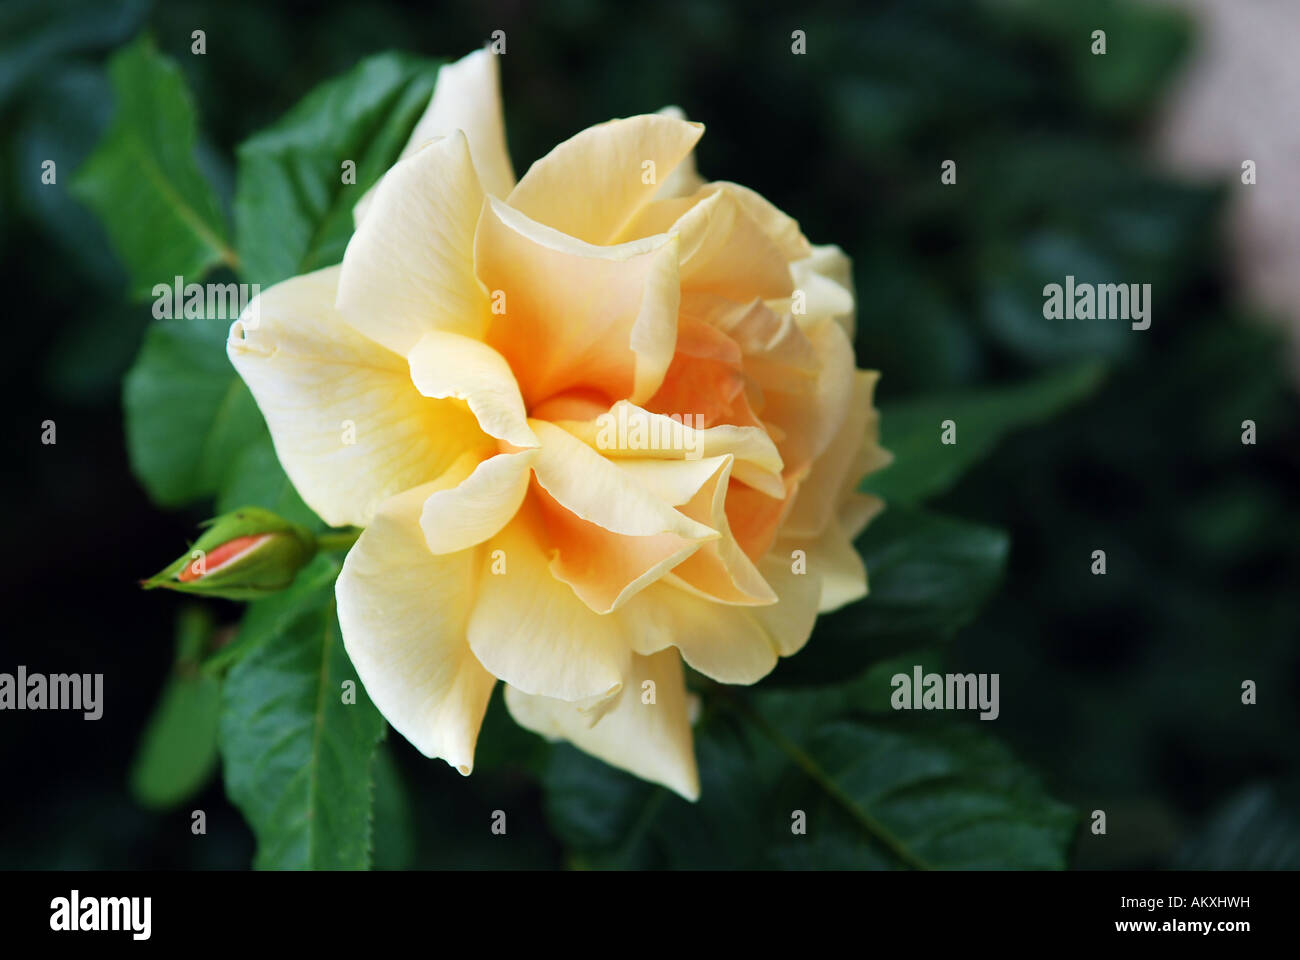 Yellow rose flower Stock Photo